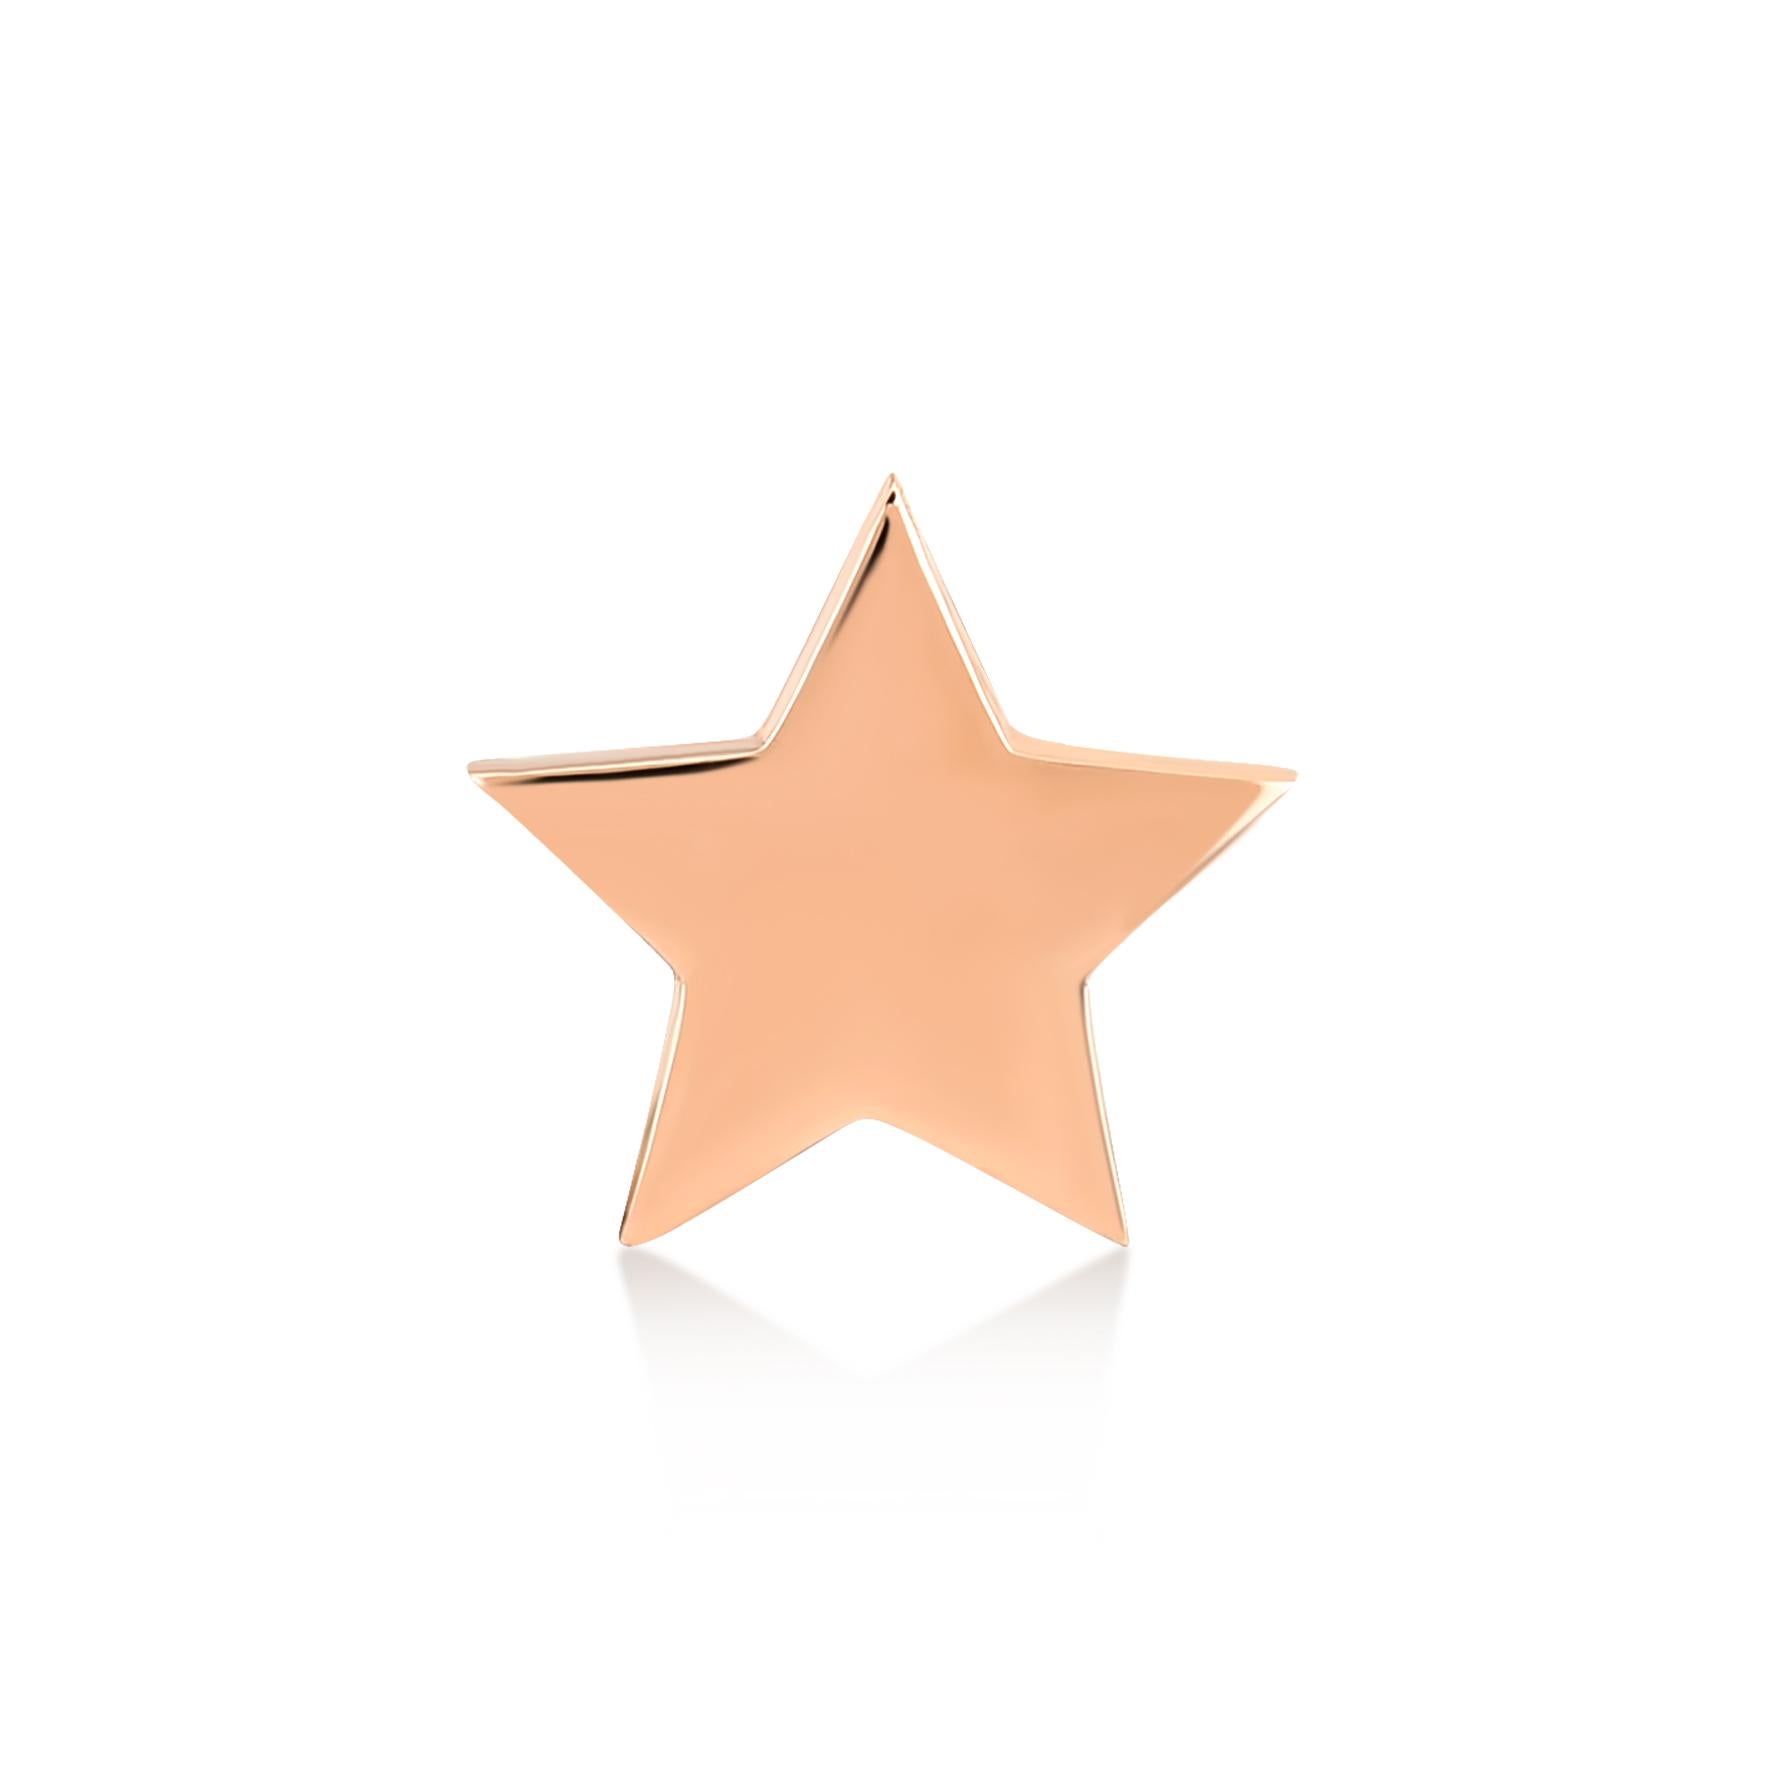 Pendiente estrella mediana (sencillo) de oro rosa de 14 quilates de Selda Jewellery

Información adicional:-
Colección Colección Eres mi estrella
Oro rosa 14k
Altura 1 cm